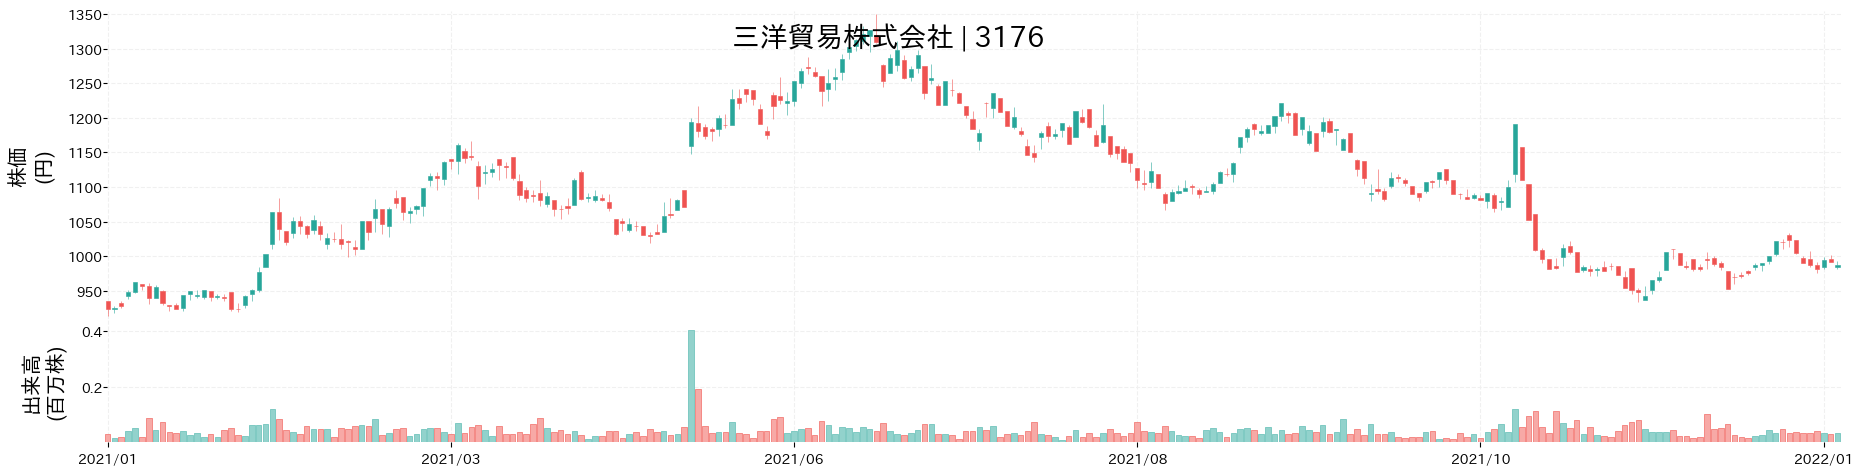 三洋貿易の株価推移(2021)